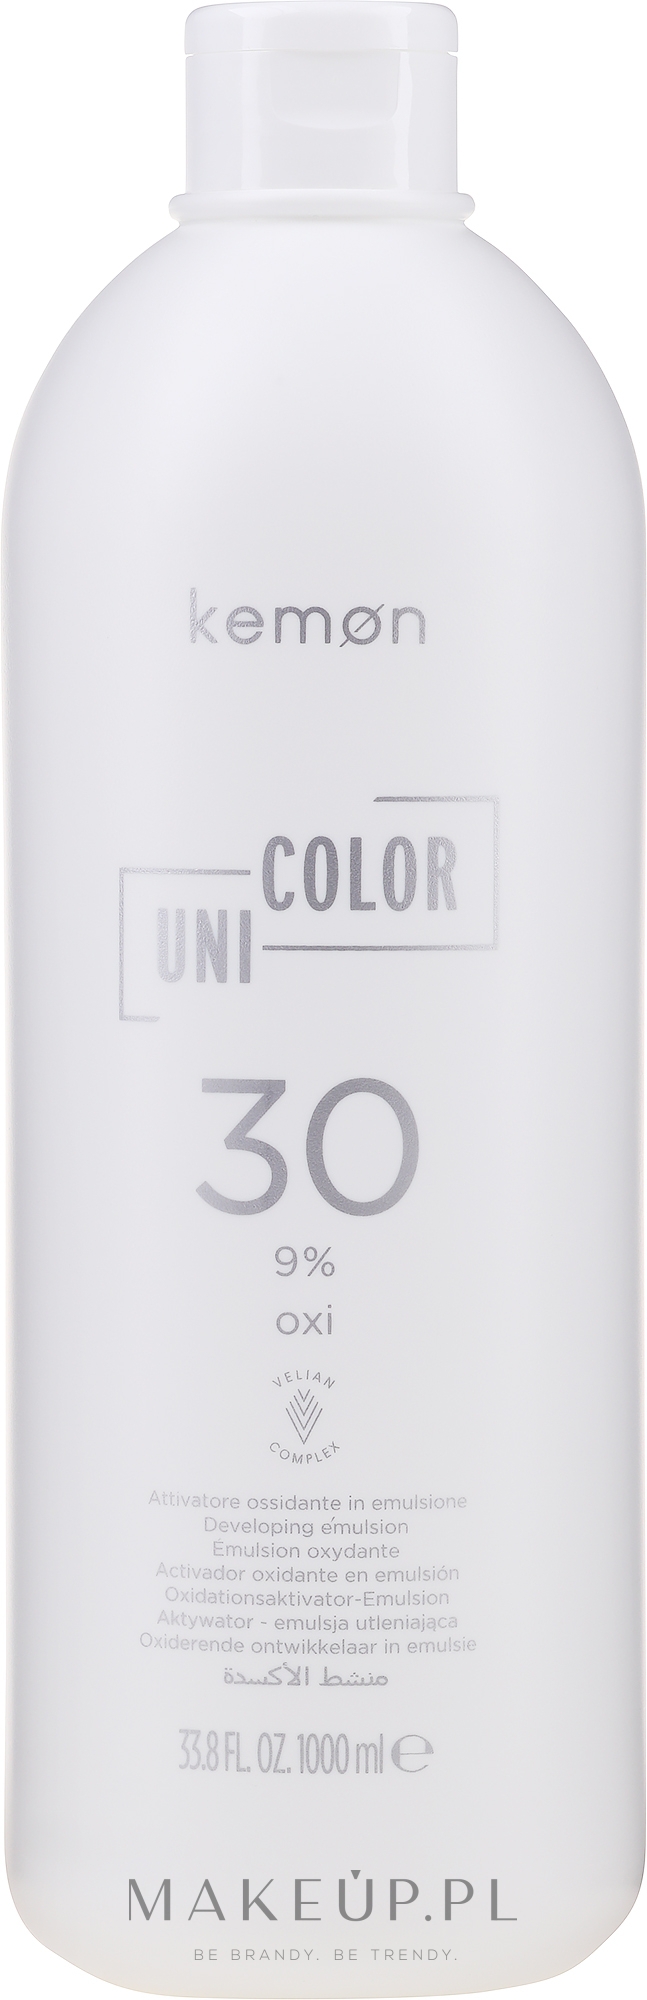 Oksydant uniwersalny do farb 9% - Kemon Uni.Color Oxi — Zdjęcie 1000 ml